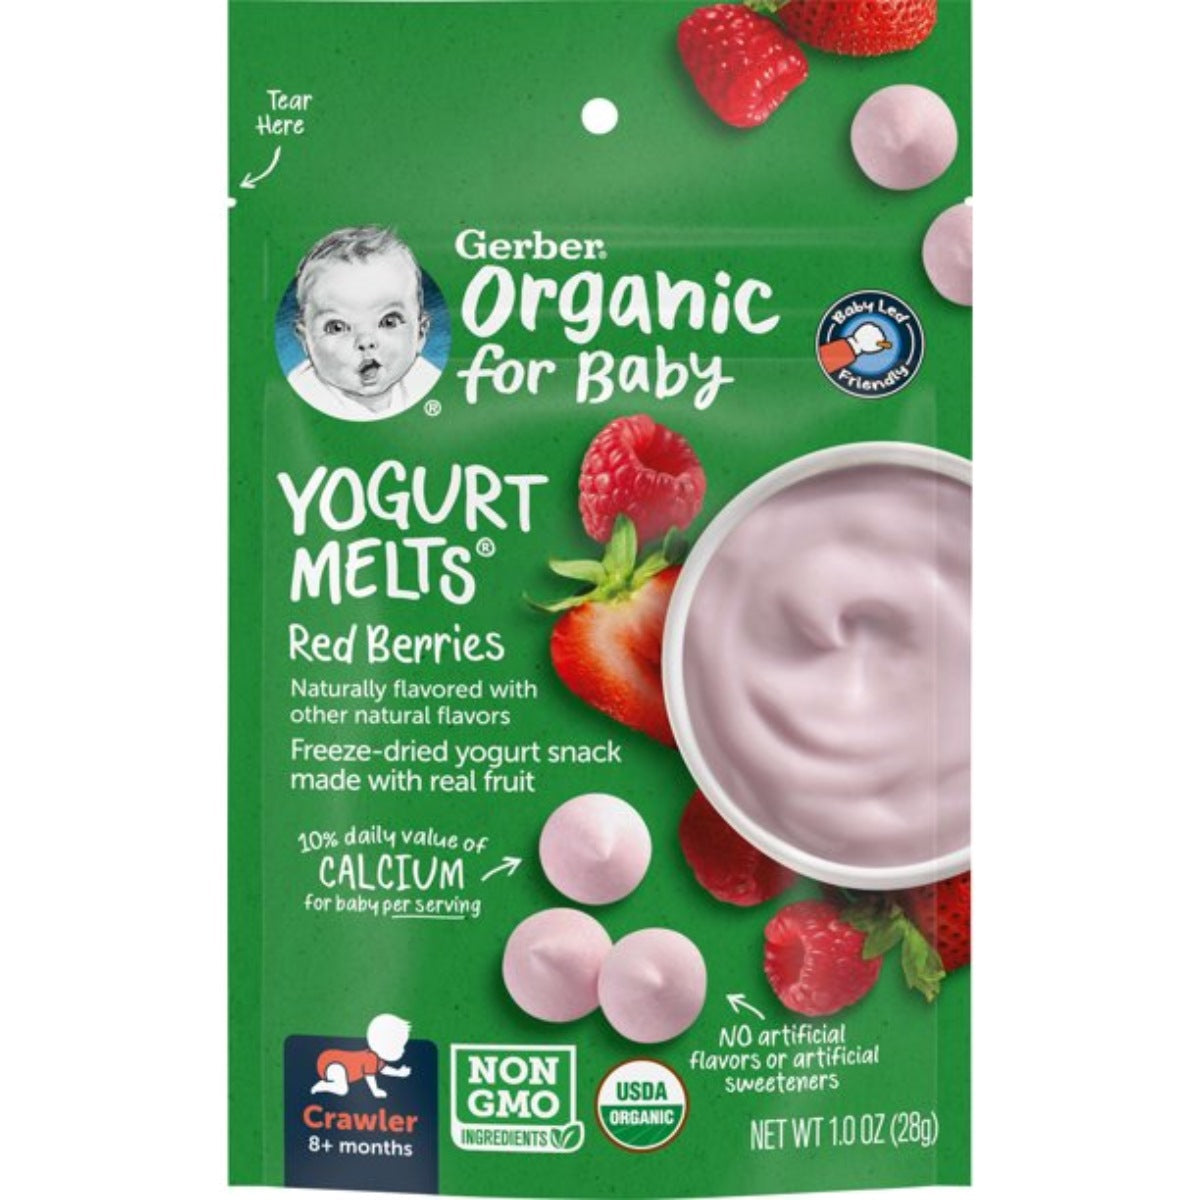 Gerber Organic Yogurt Melts Red Berries